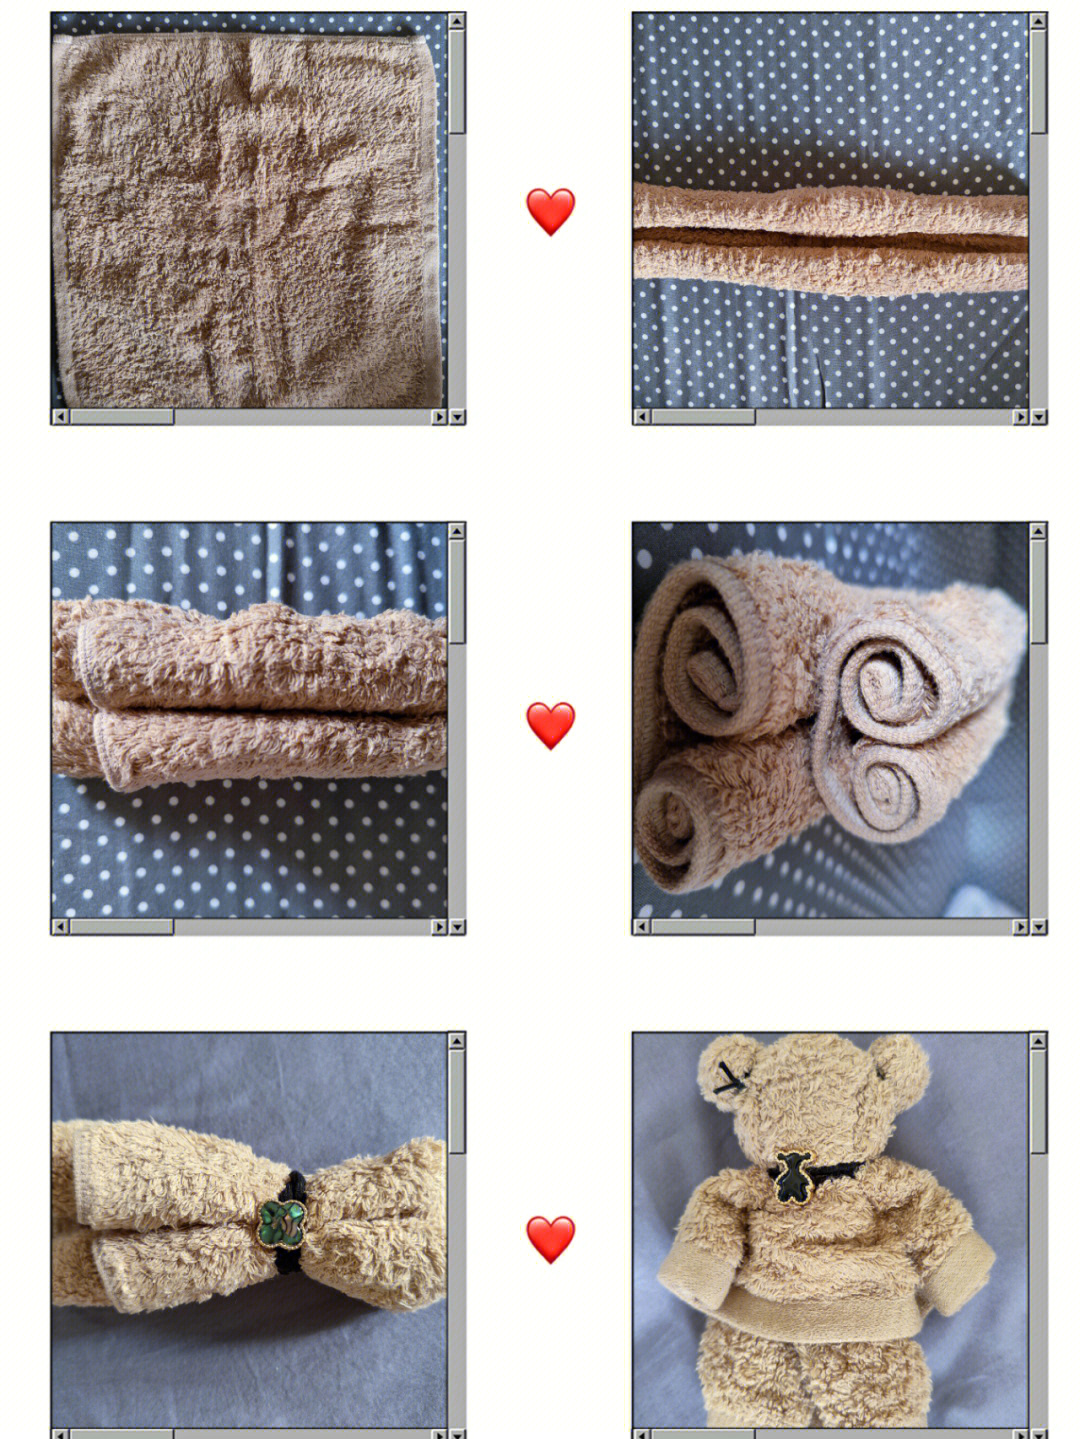 毛巾花式折法图片